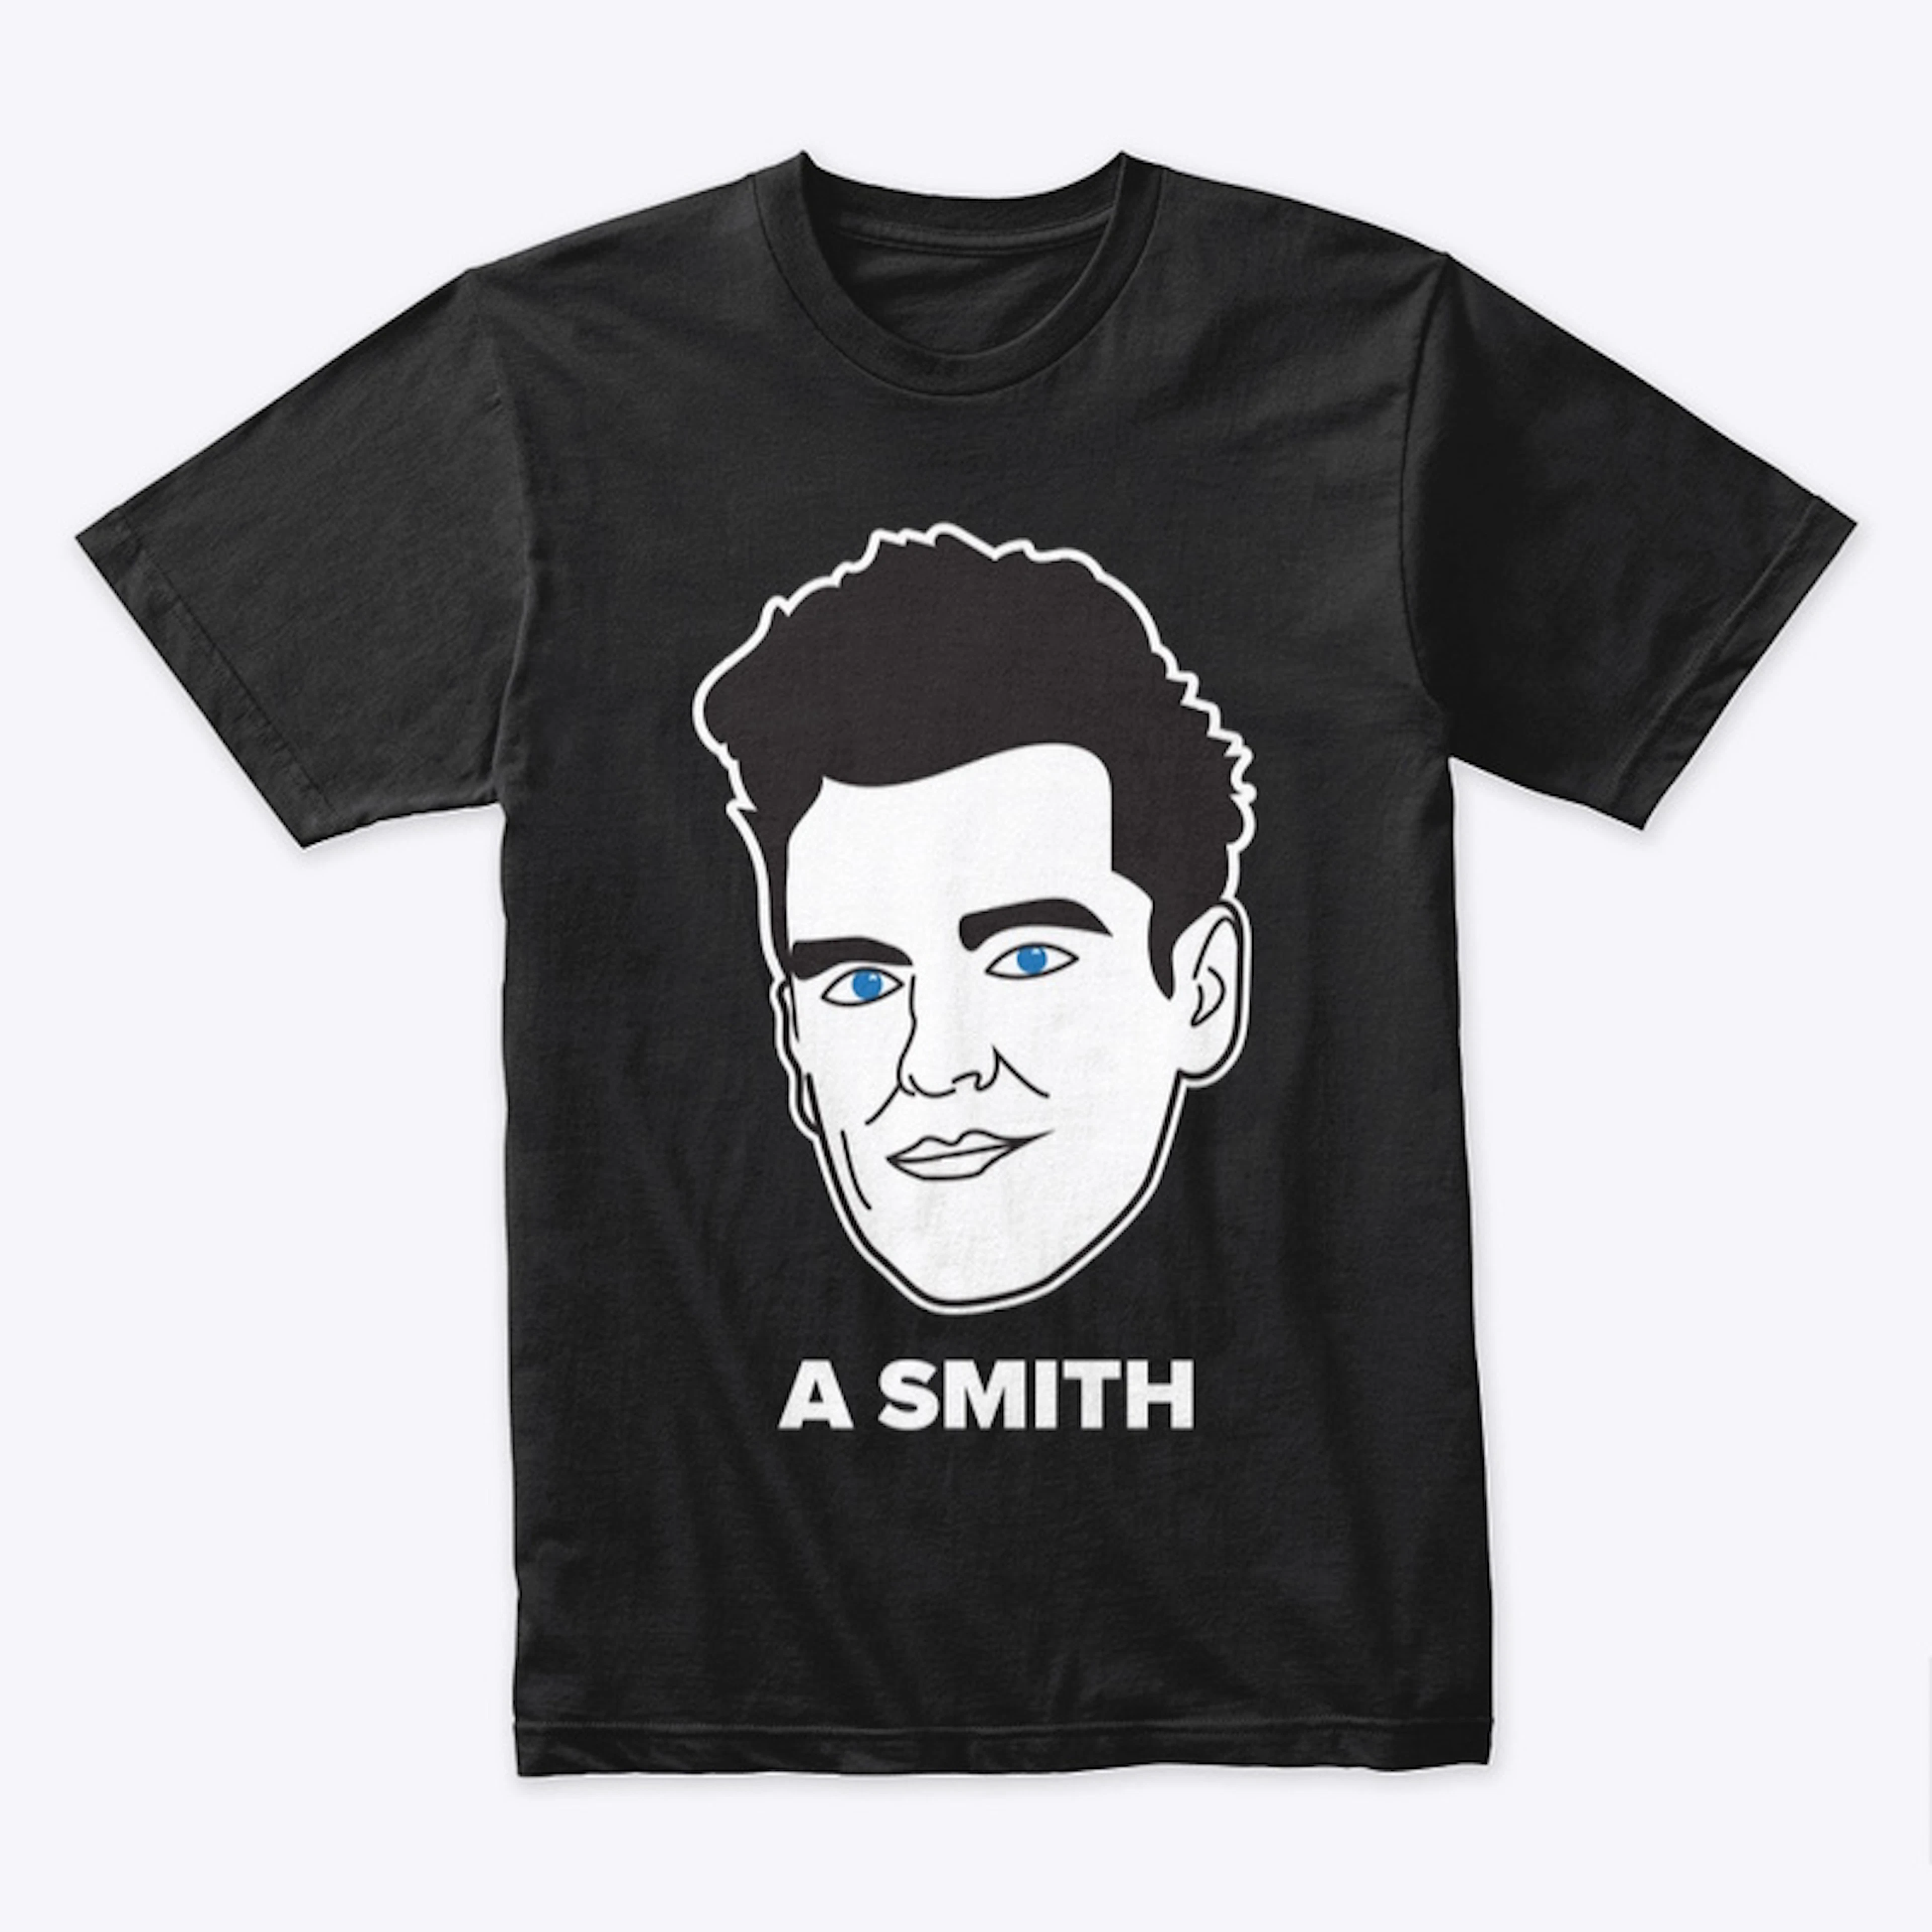 "A" Smith